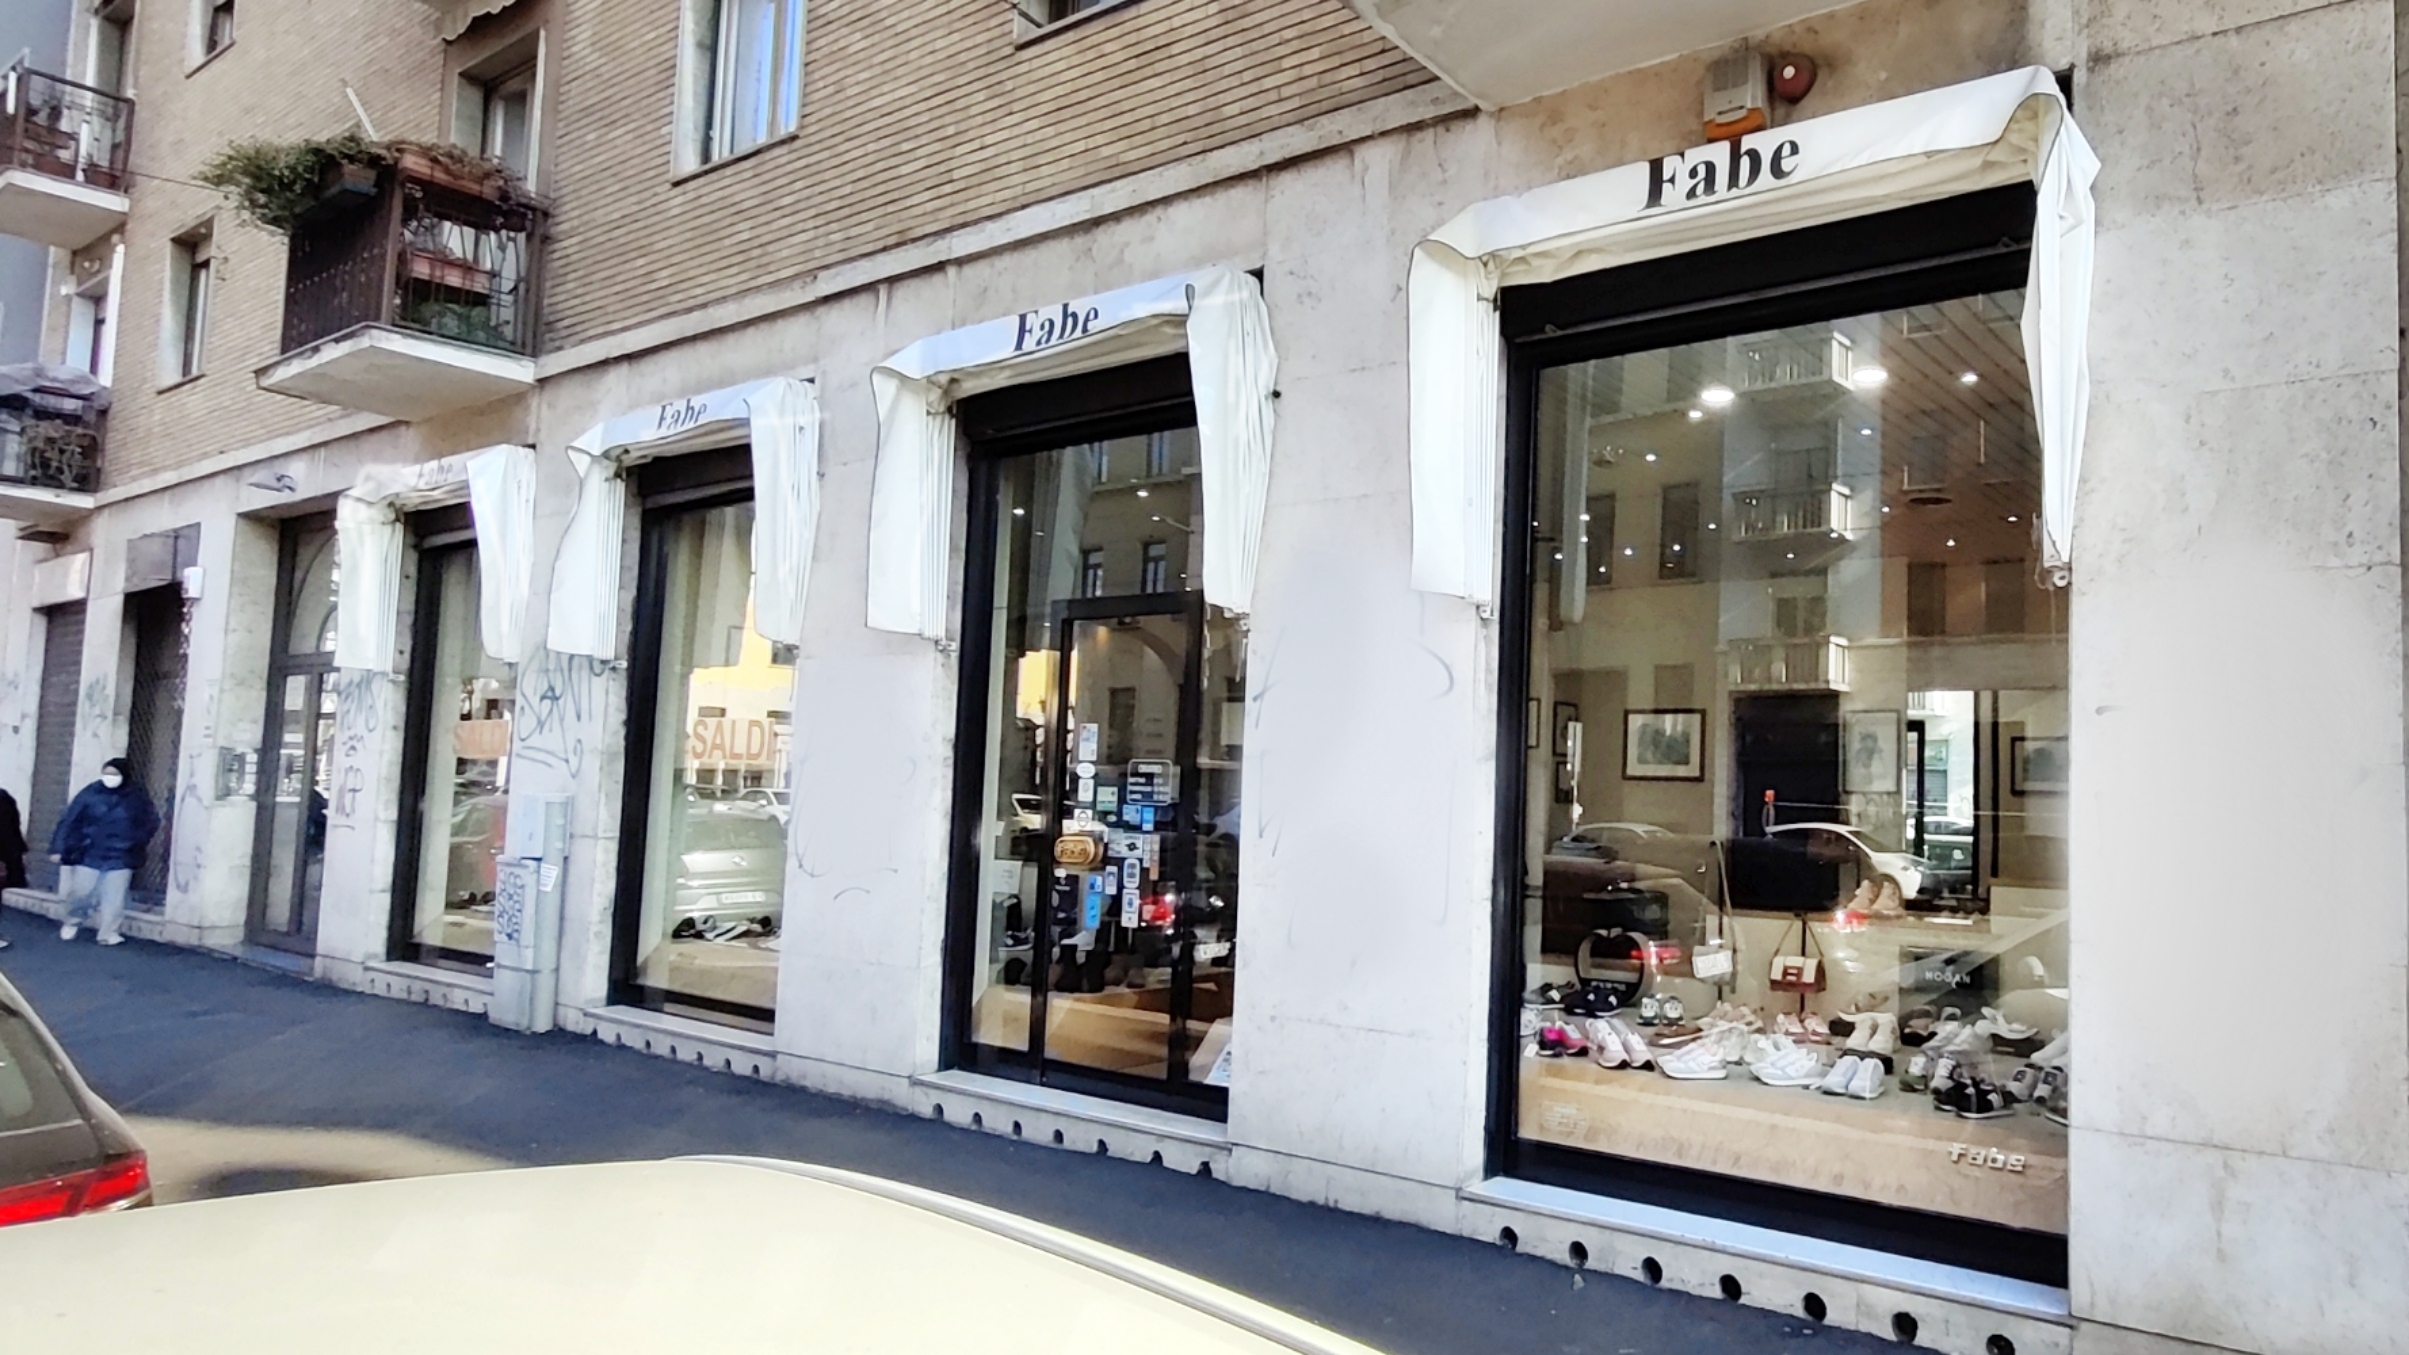 Negozio Ufficiale Ash Doucal's Hogan Via Roma 15, Donna , Uomo, Borse stivali sneakers a Milano